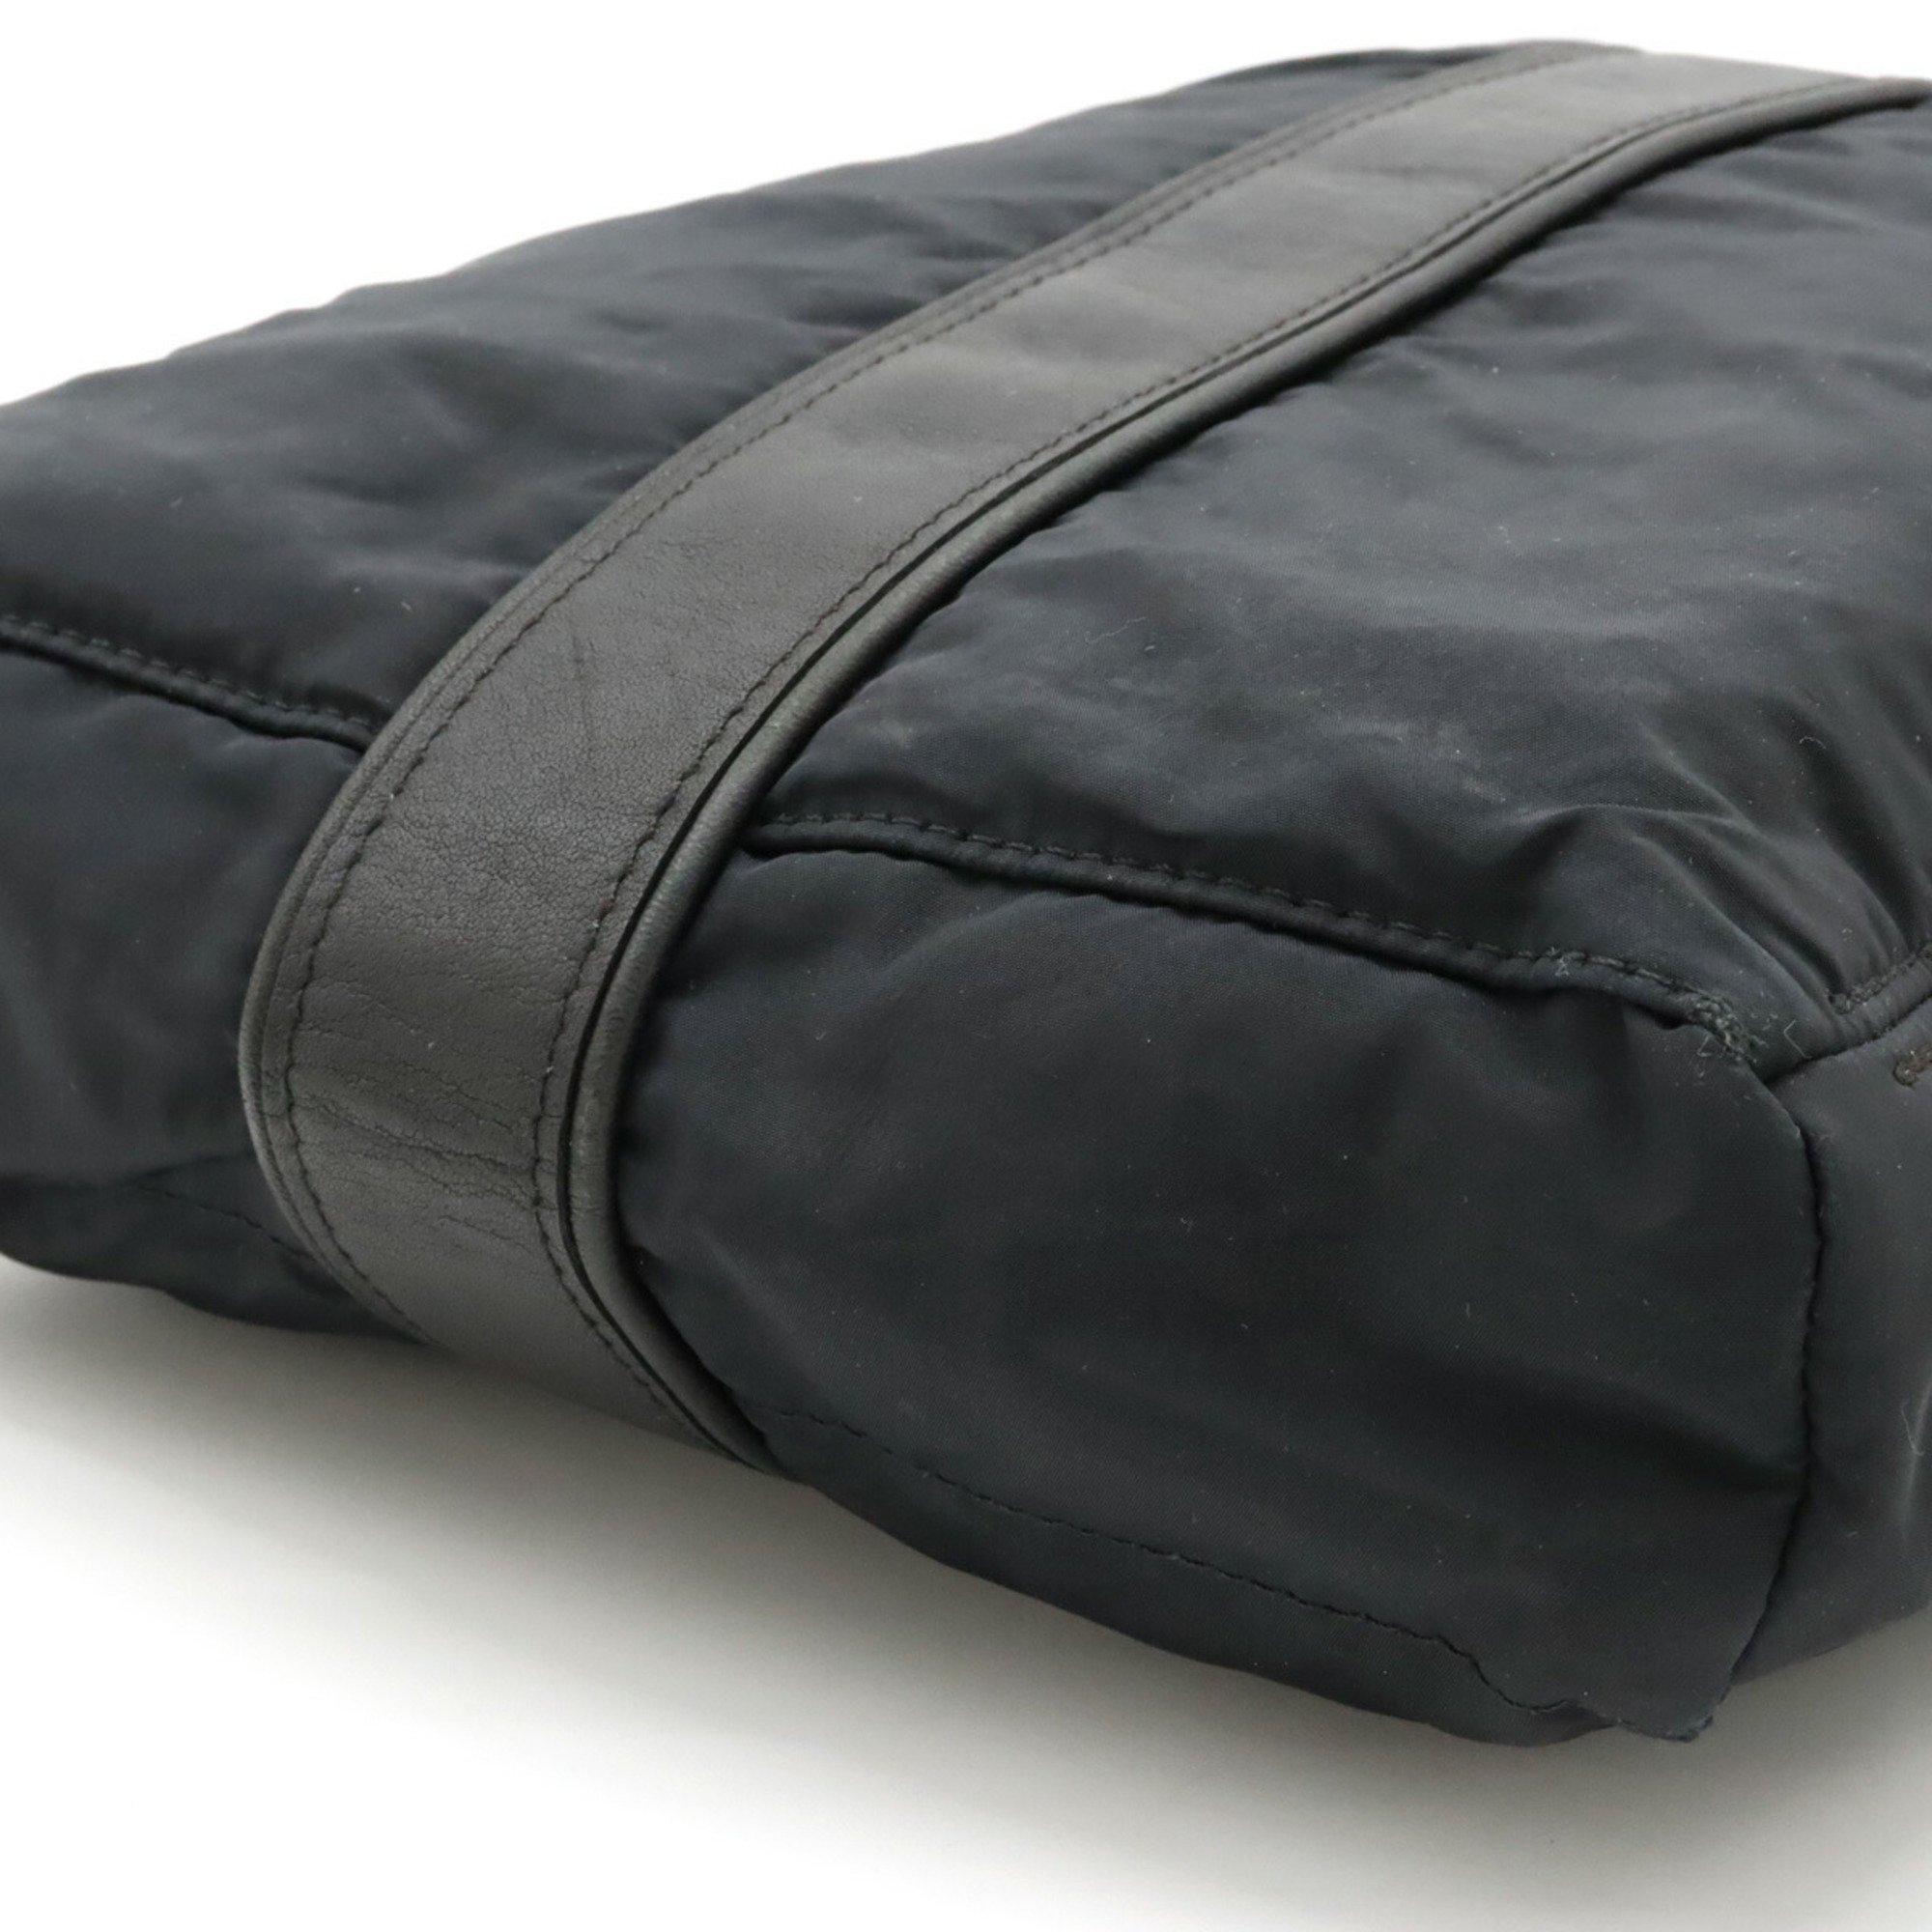 HERMES Acapulco Bandouliere MM Shoulder Bag Pochette Nylon Leather Black